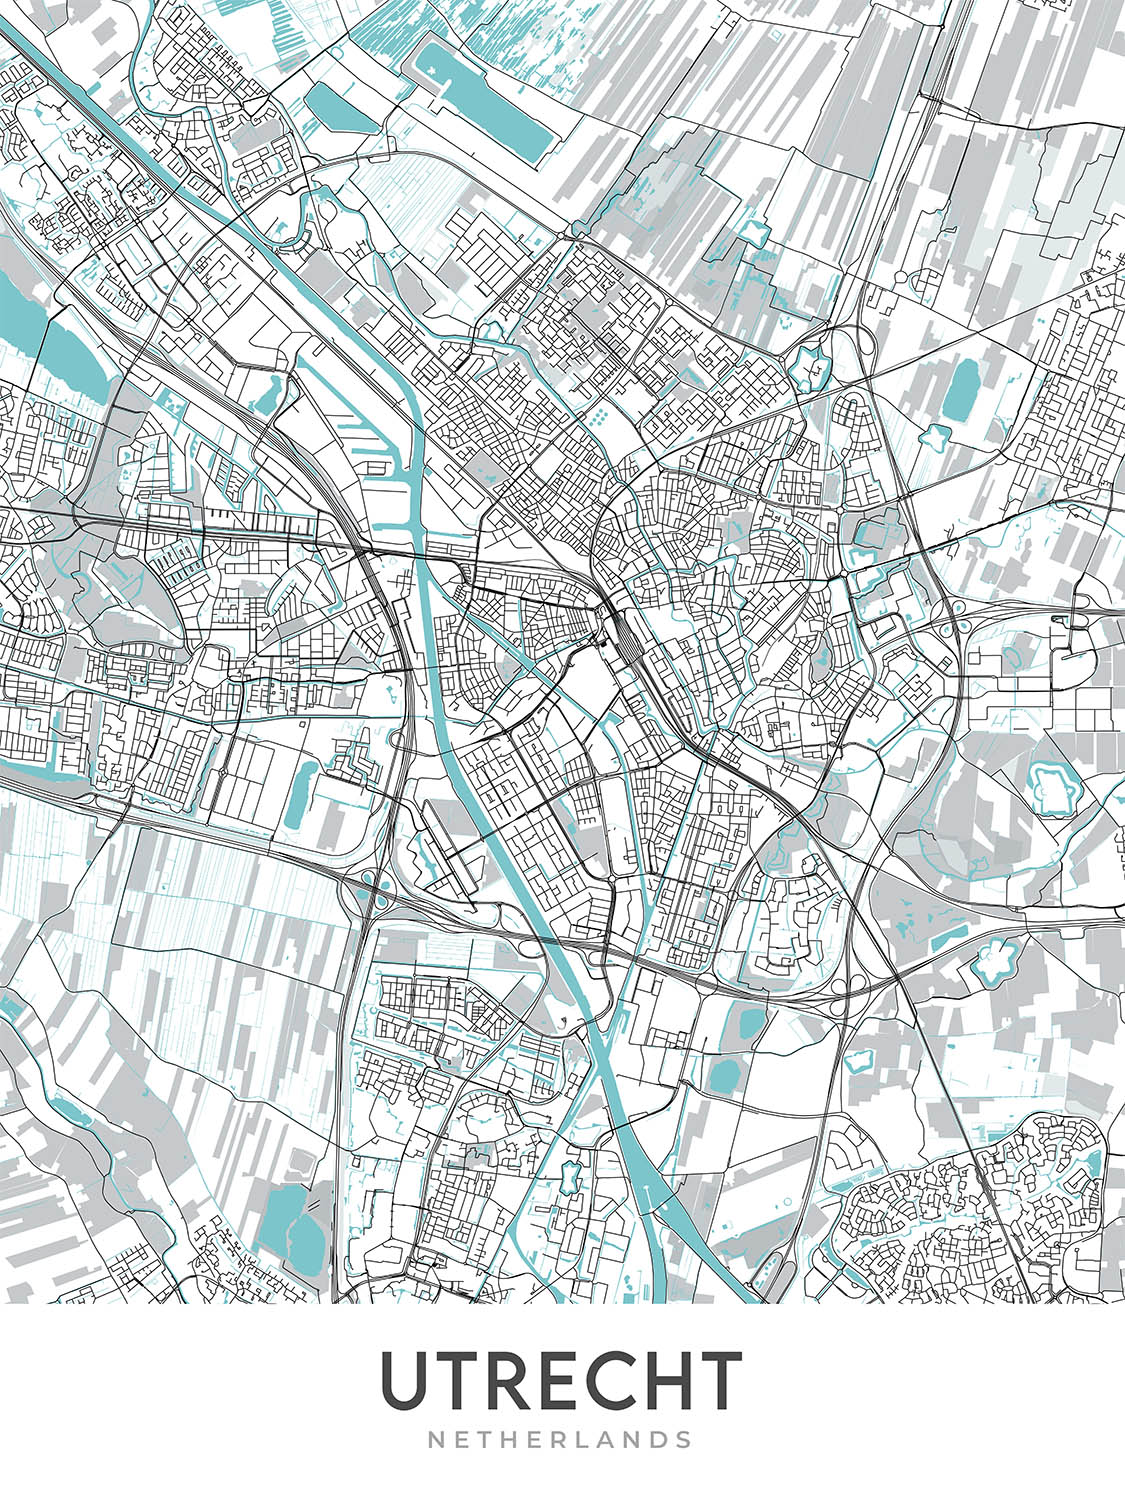 Mapa moderno de la ciudad de Utrecht, Países Bajos: Torre Dom, Estación Central, Casa Rietveld, Jardín Botánico, Jaarbeurs